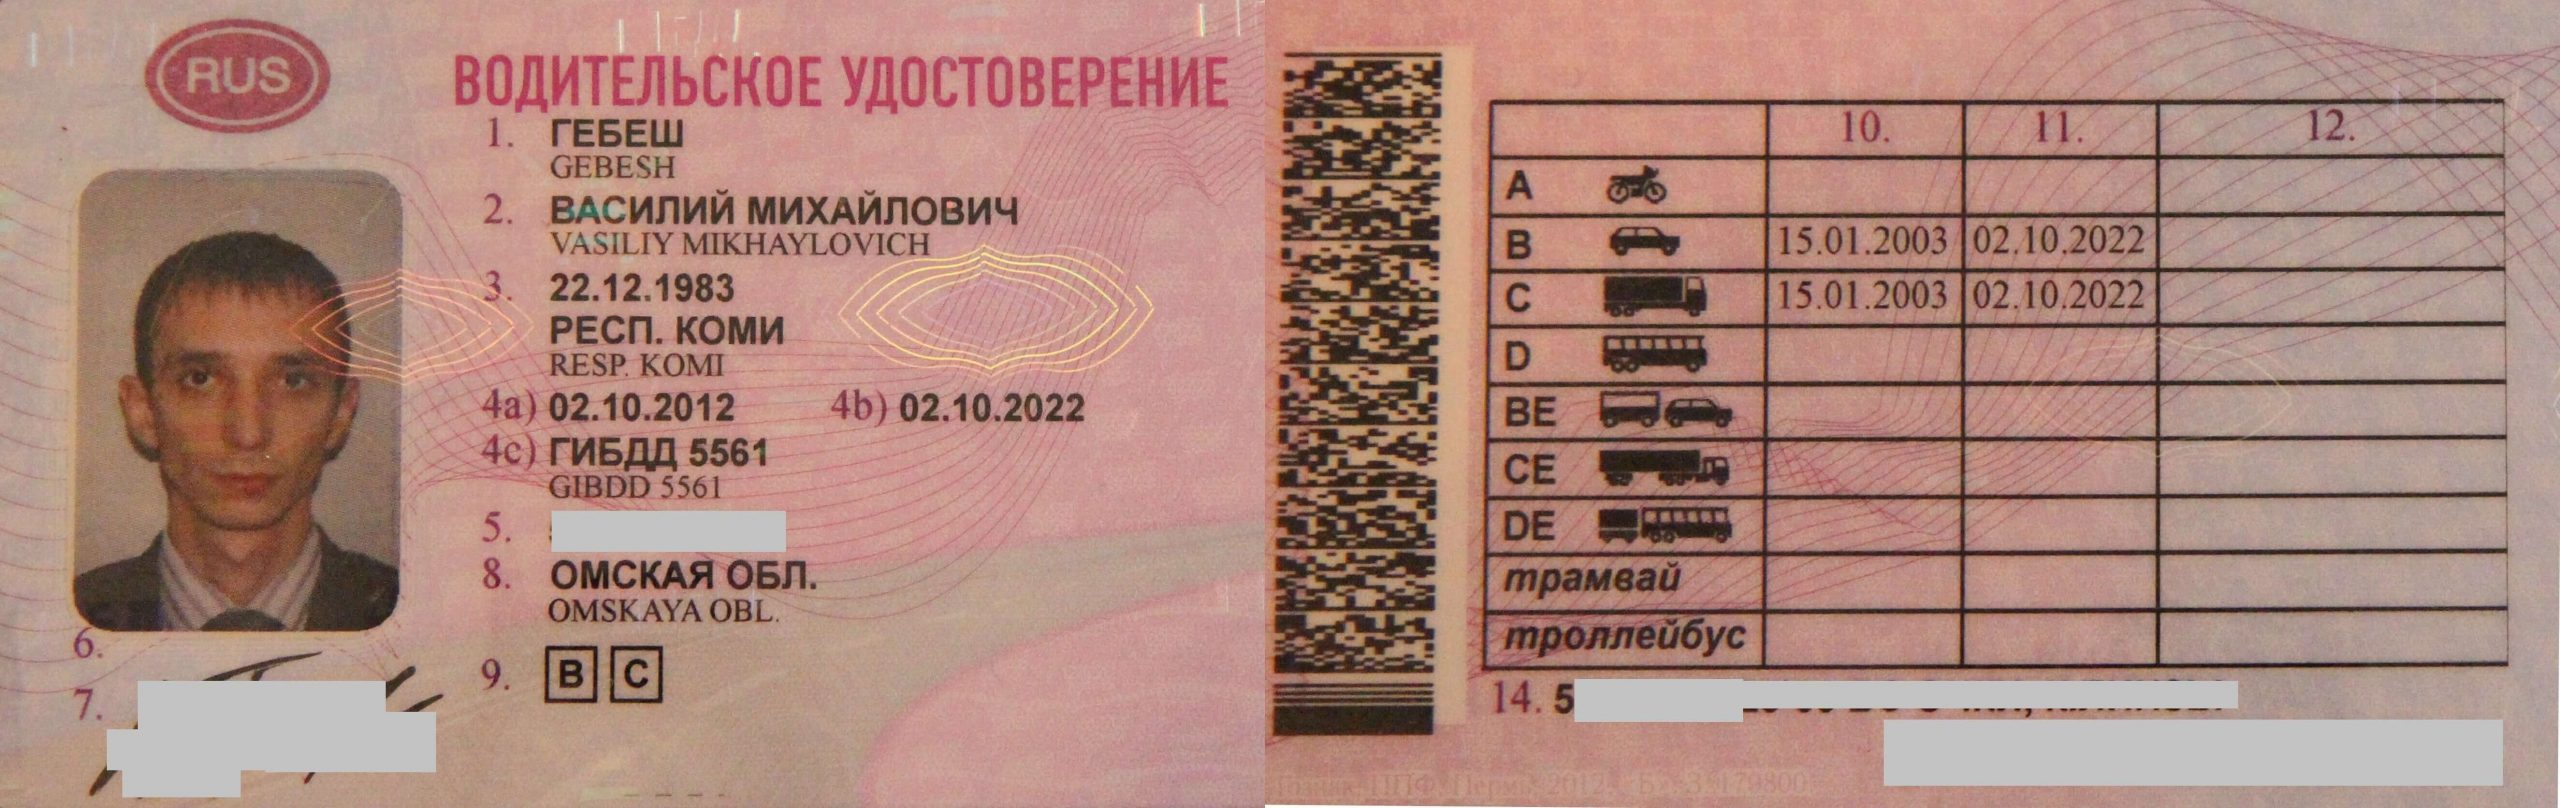 Можно ли предъявить фото водительского удостоверения сотруднику дпс